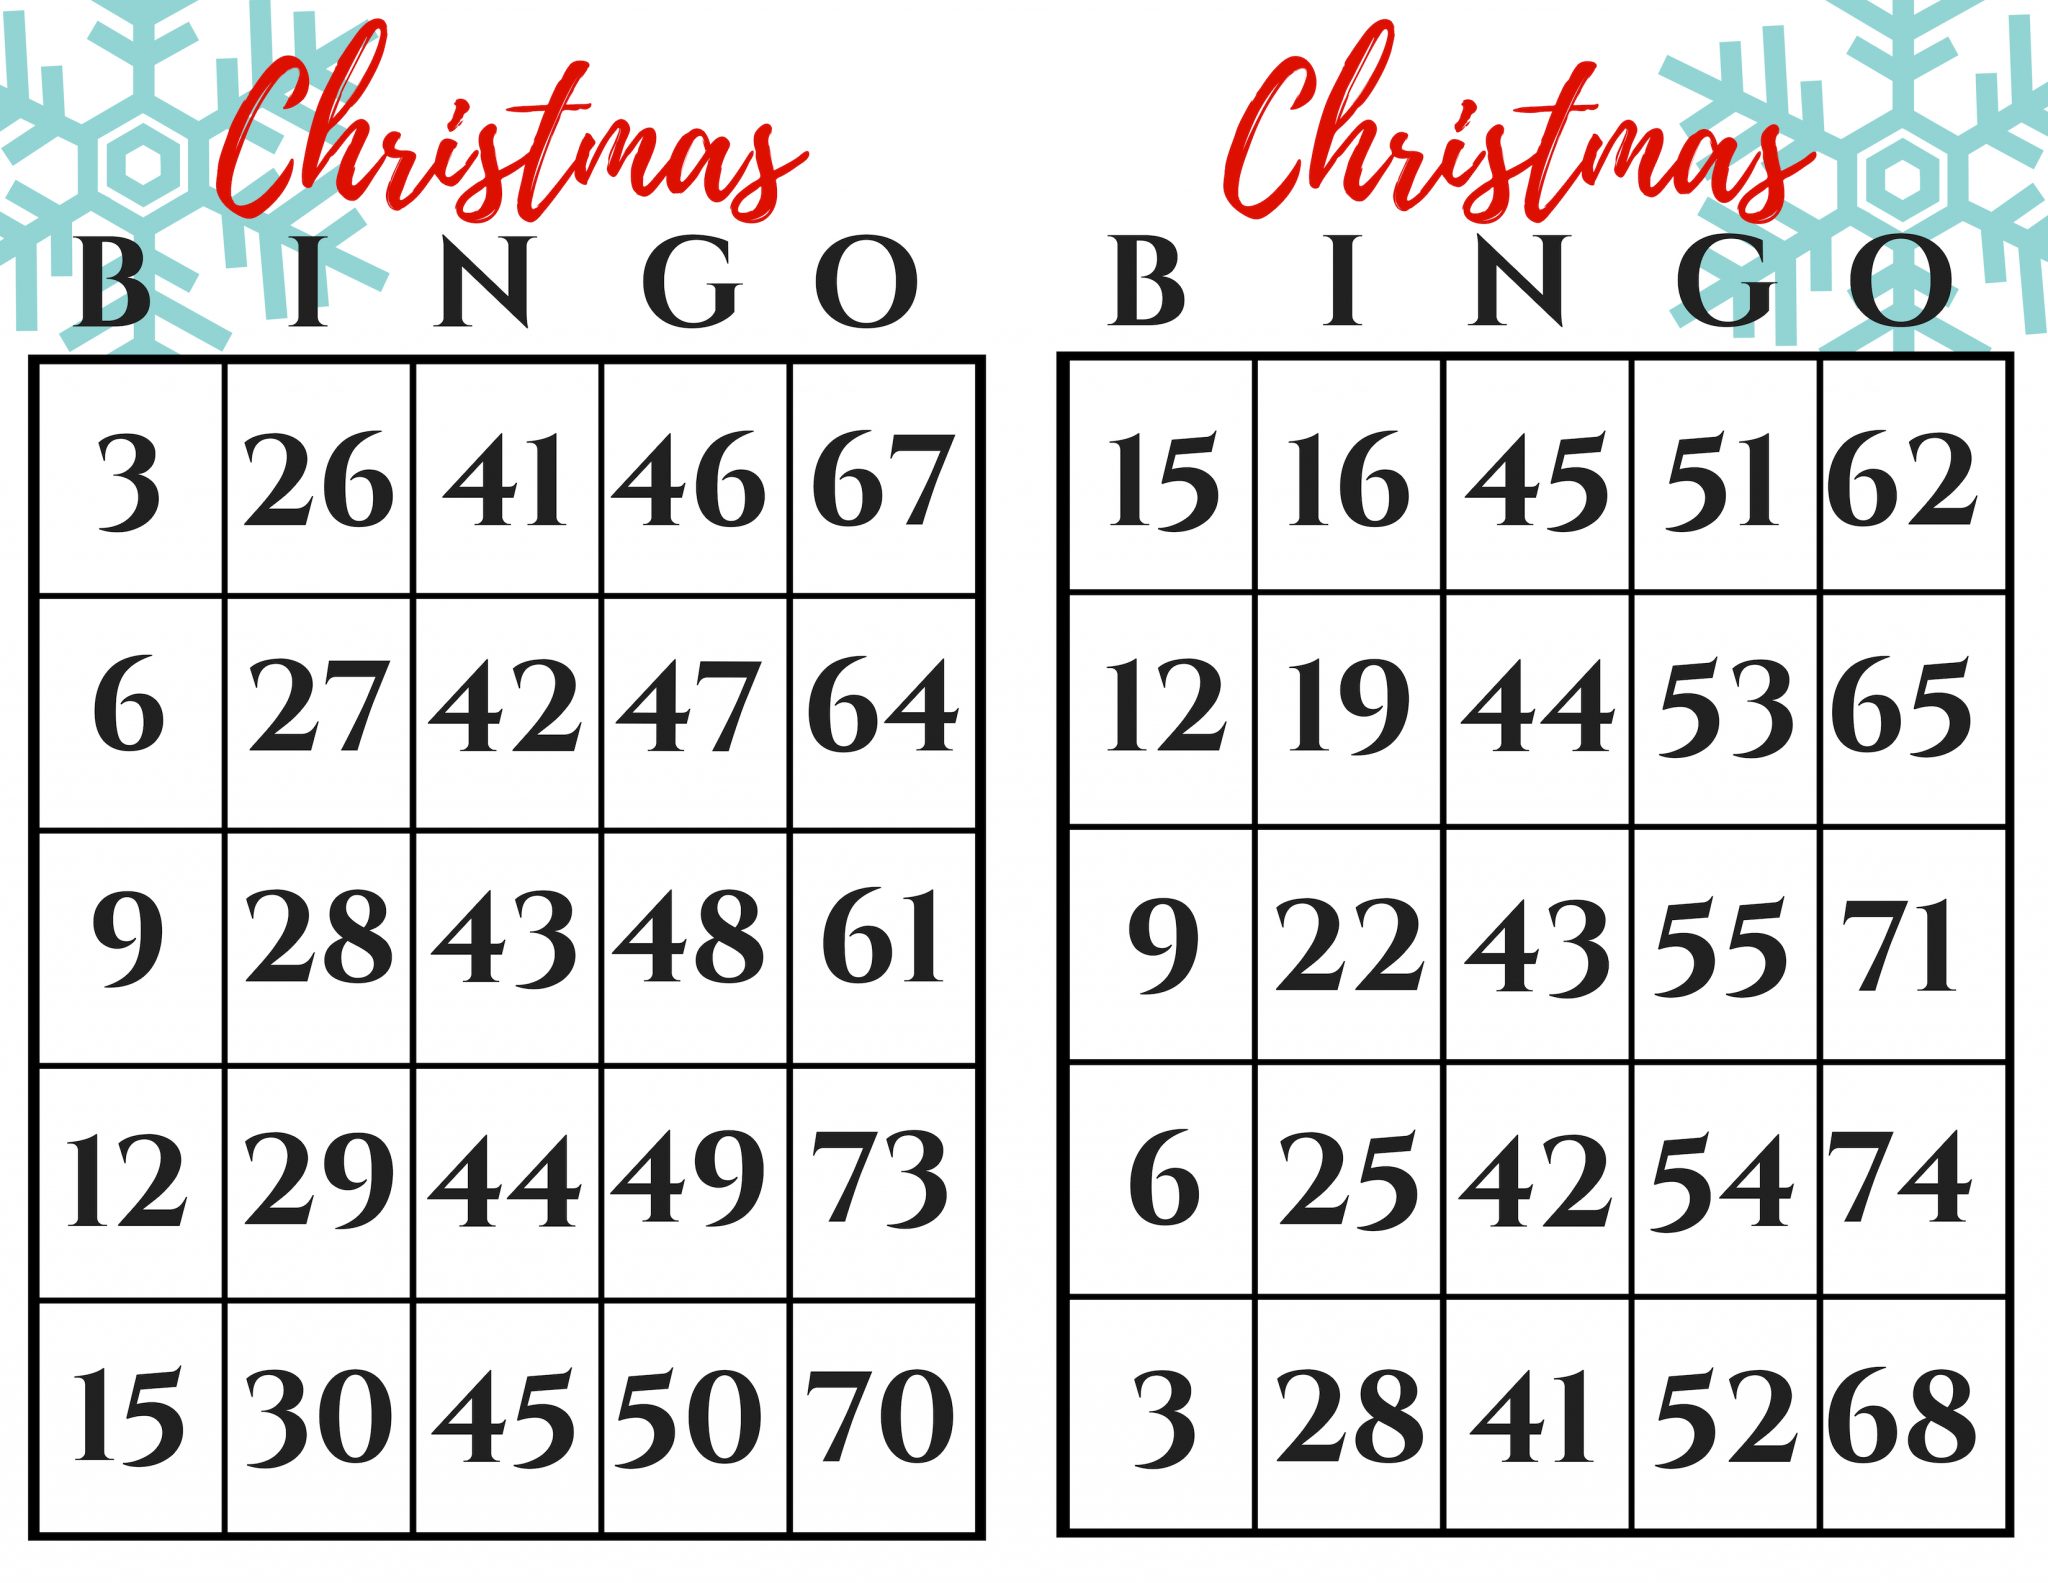 christmas-bingo-gift-exchange-game-december-pin-challenge-printable